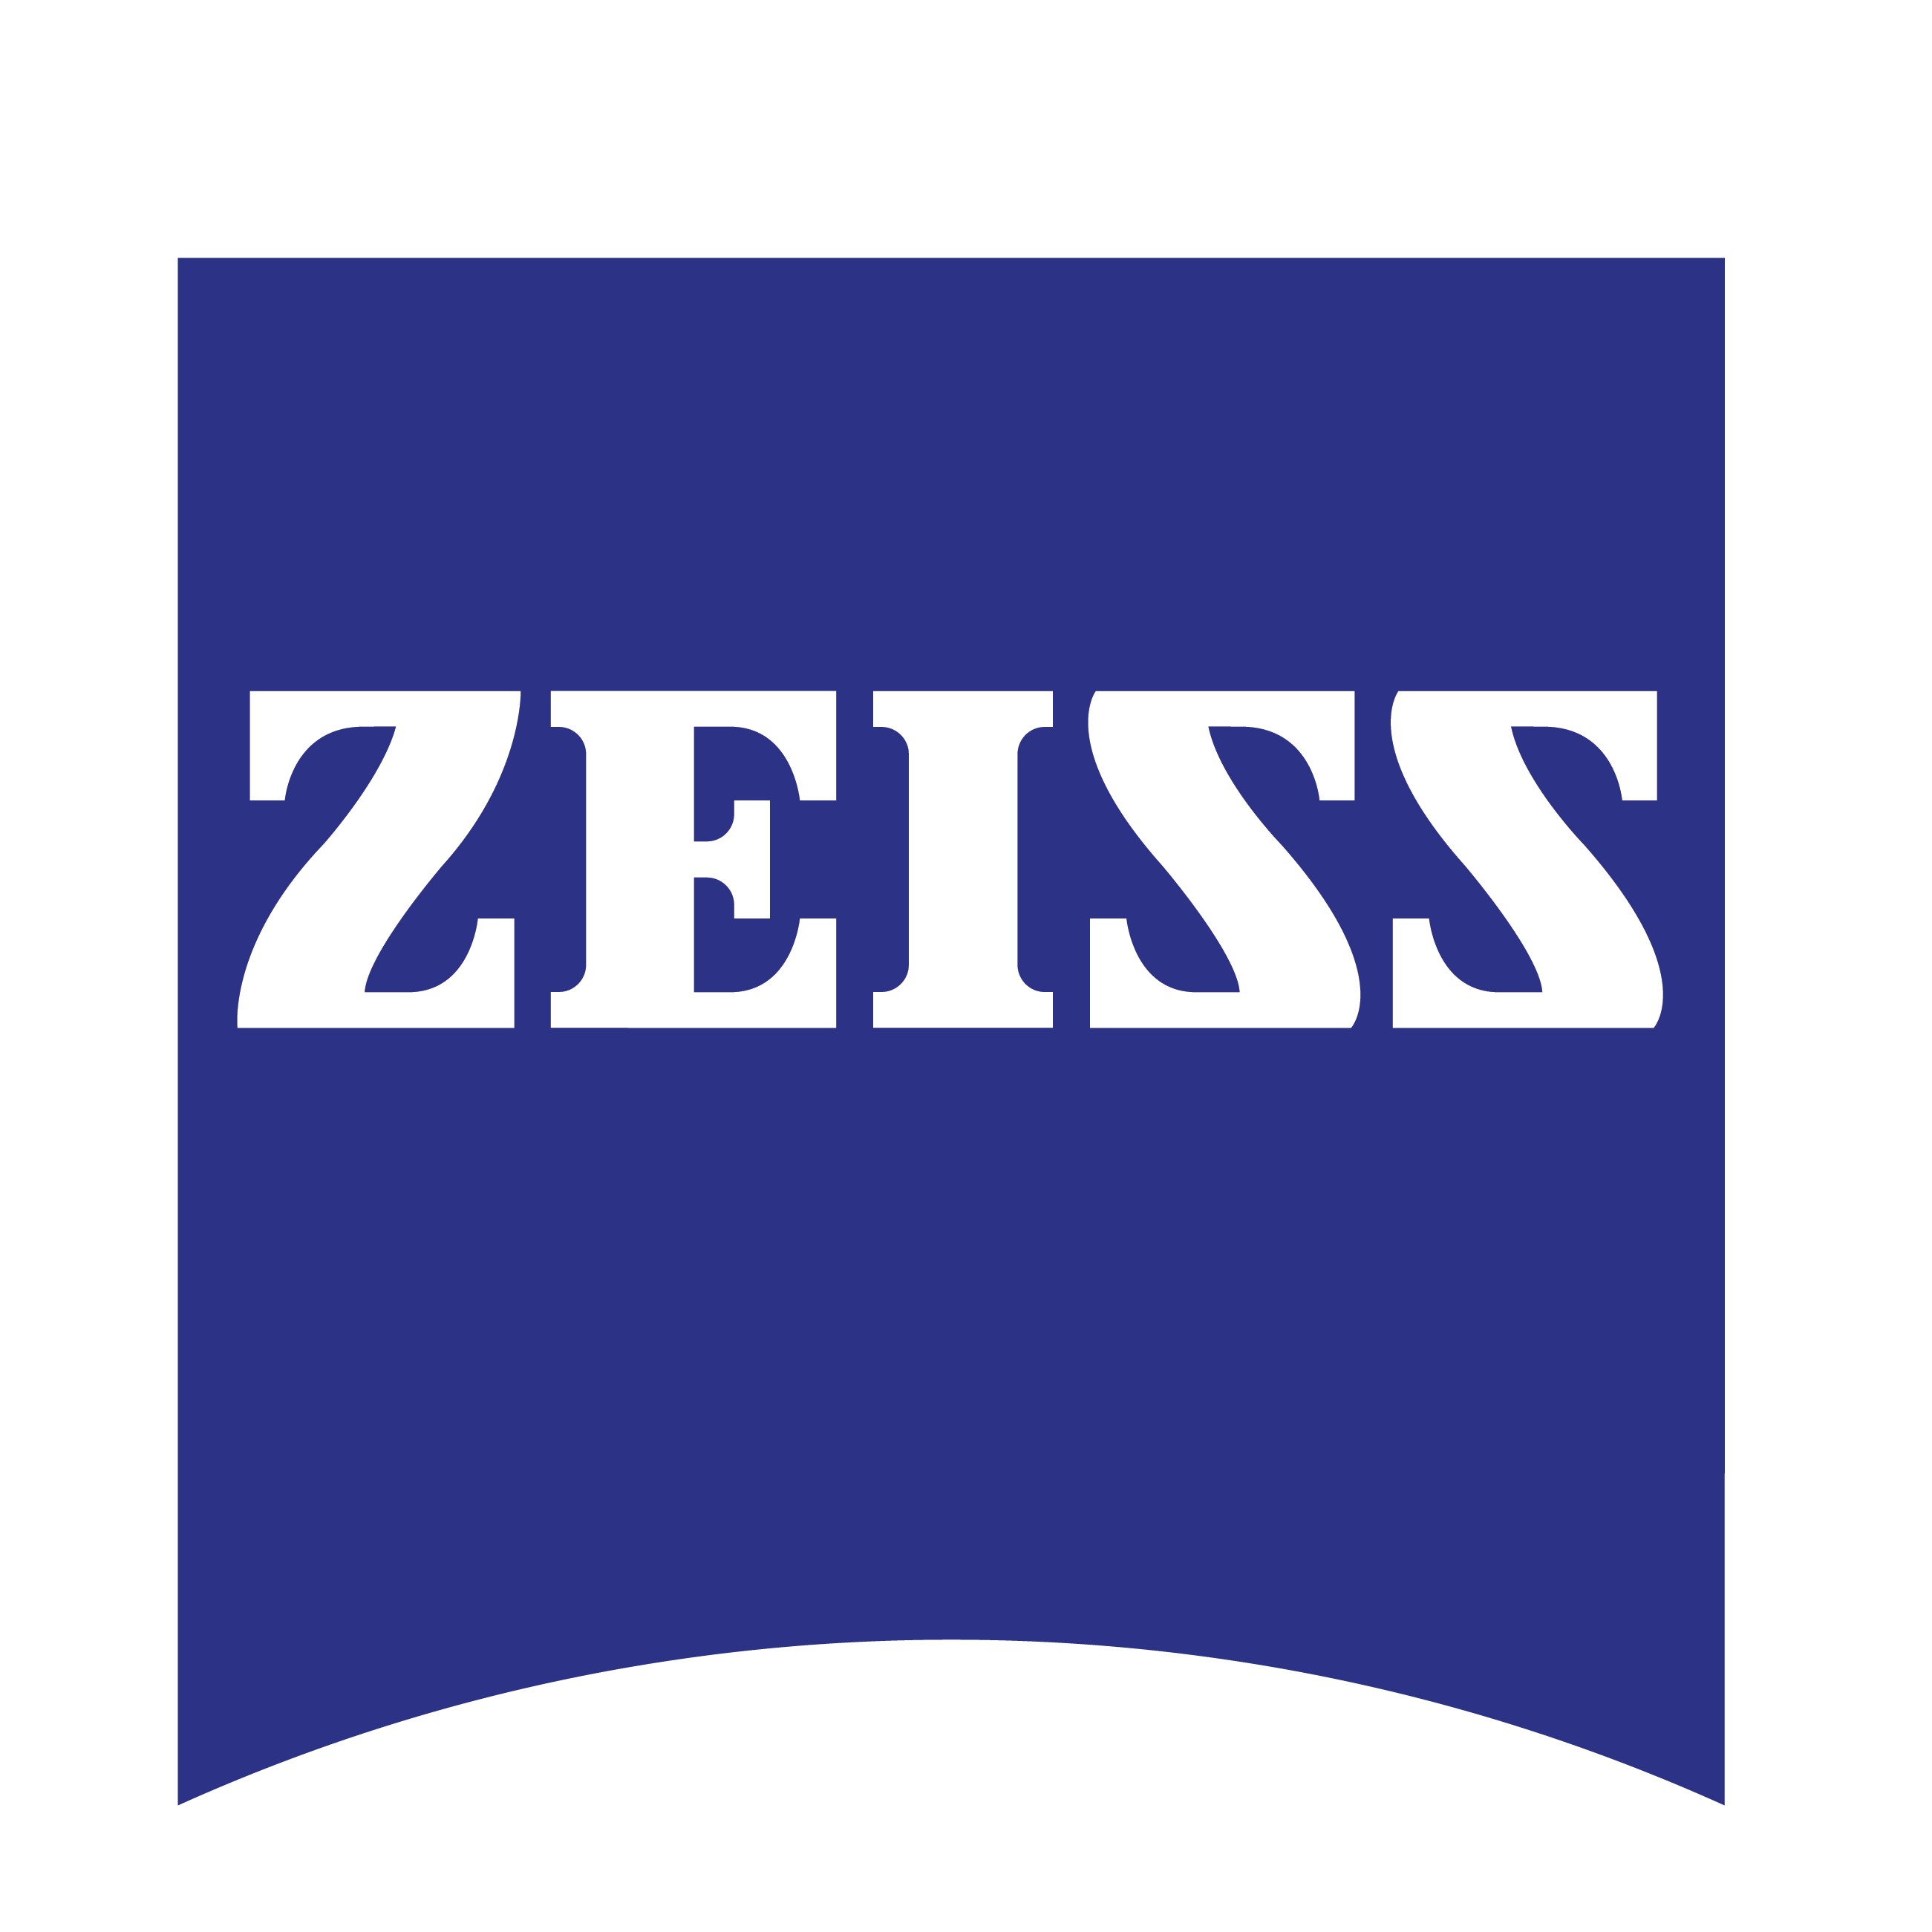 ZEISS Logo Shield 500x500px RGBCC